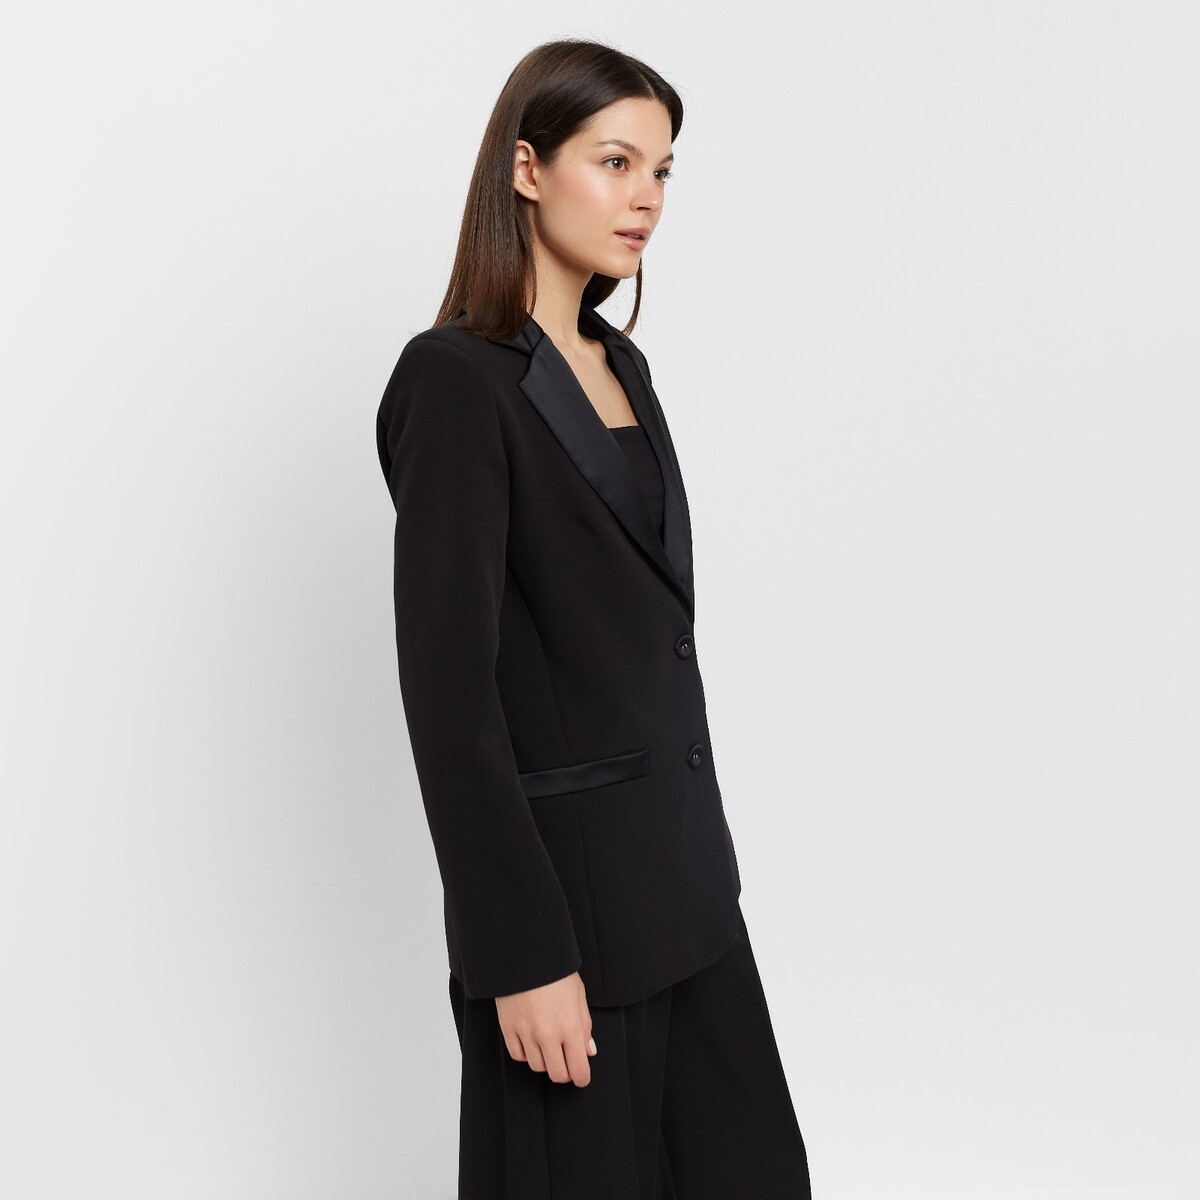 Пиджак MINAKU, размер 42, цвет черный 02054858 - фото 2